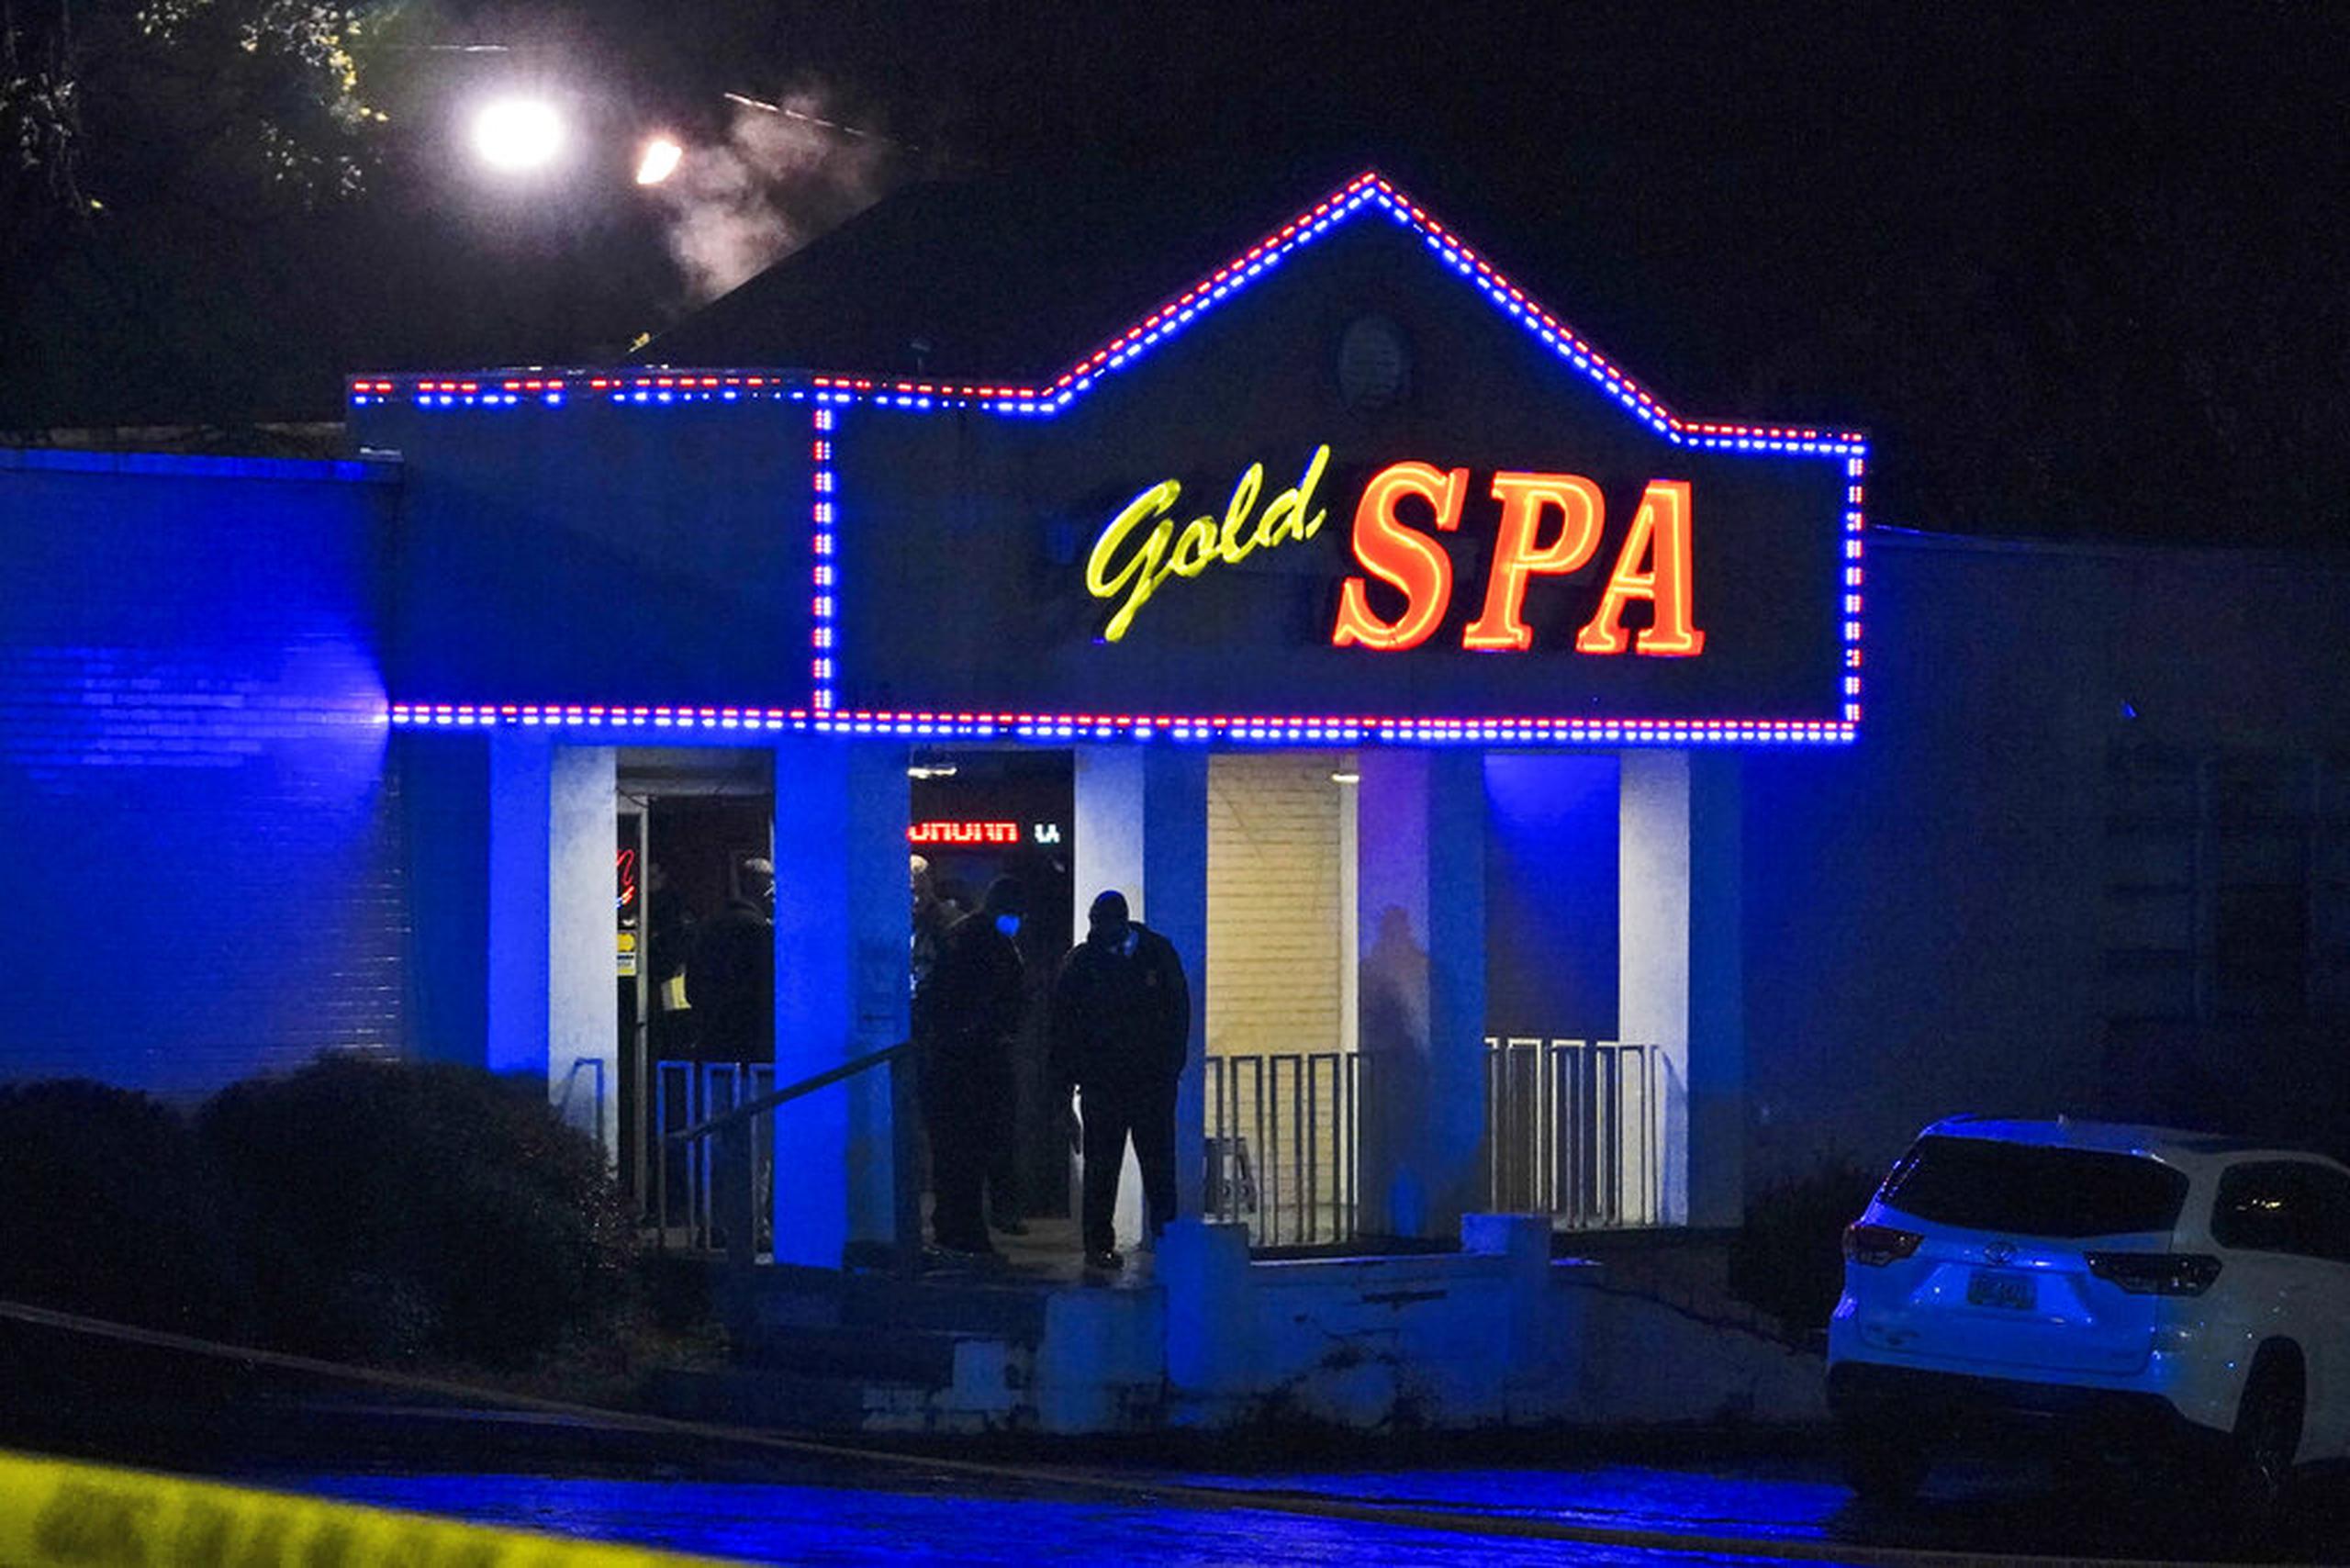 En el negocio Gold Spa encontraron a tres mujeres muertas por lo que parecían ser heridas de bala.